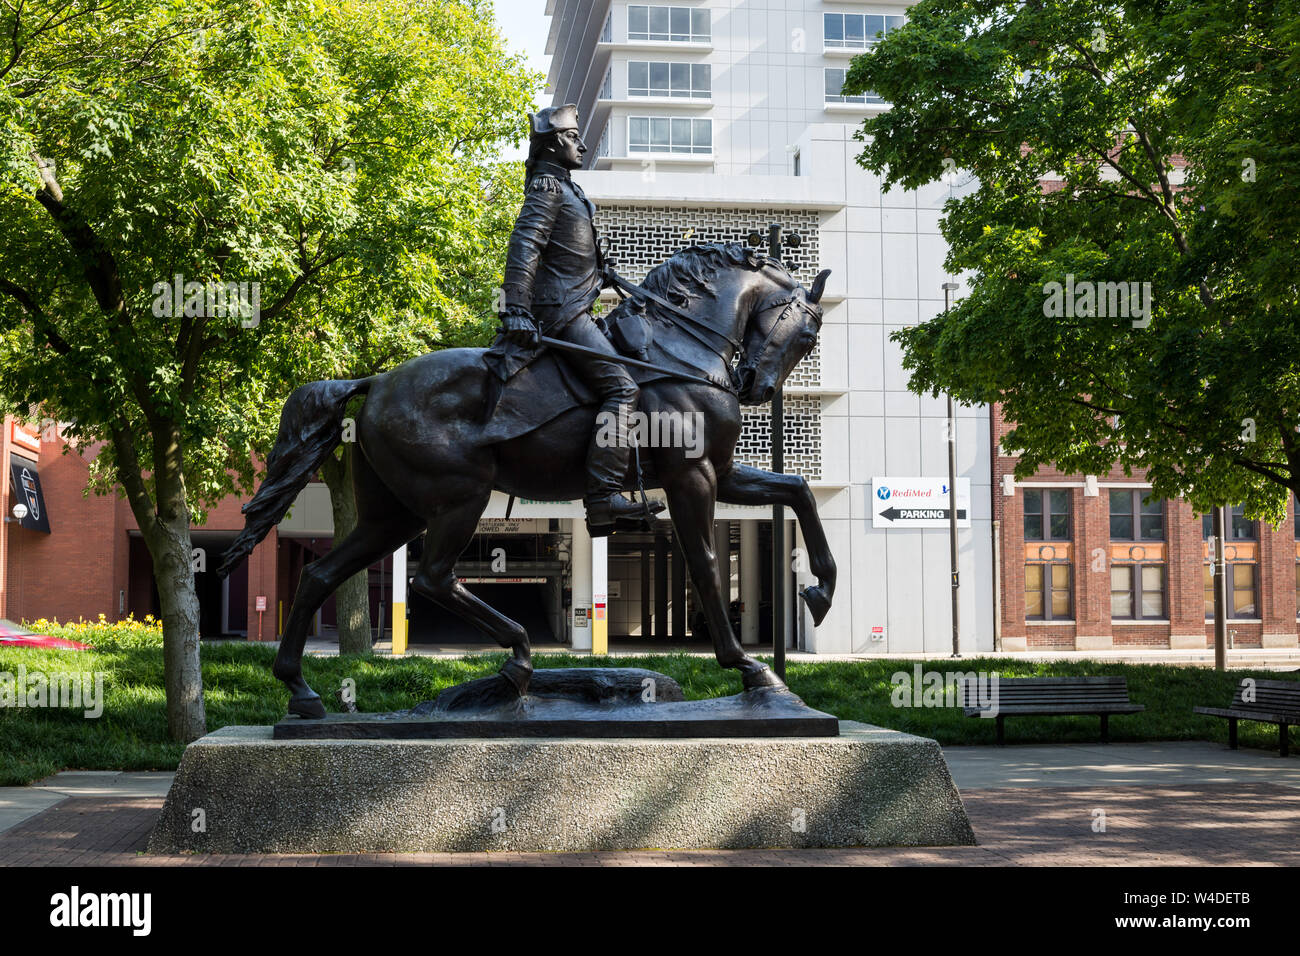 Une statue majestueuse du général « Mad » Anthony Wayne et de son cheval s'élève sur la place Freimann, dans le centre-ville de fort Wayne, Indiana, éponym par le général. Banque D'Images